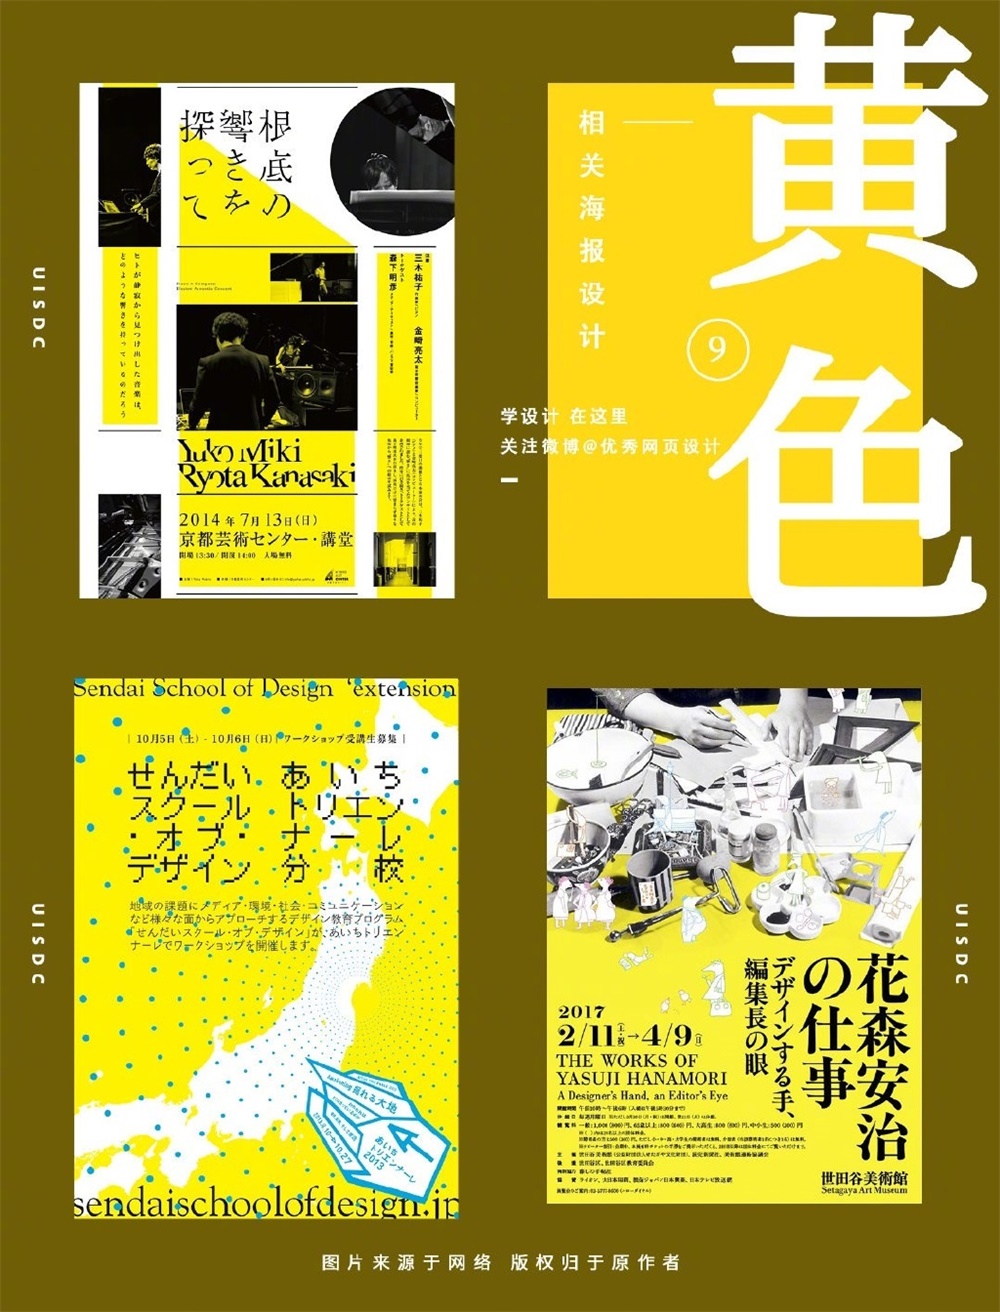 27张「黄色」海报封面设计